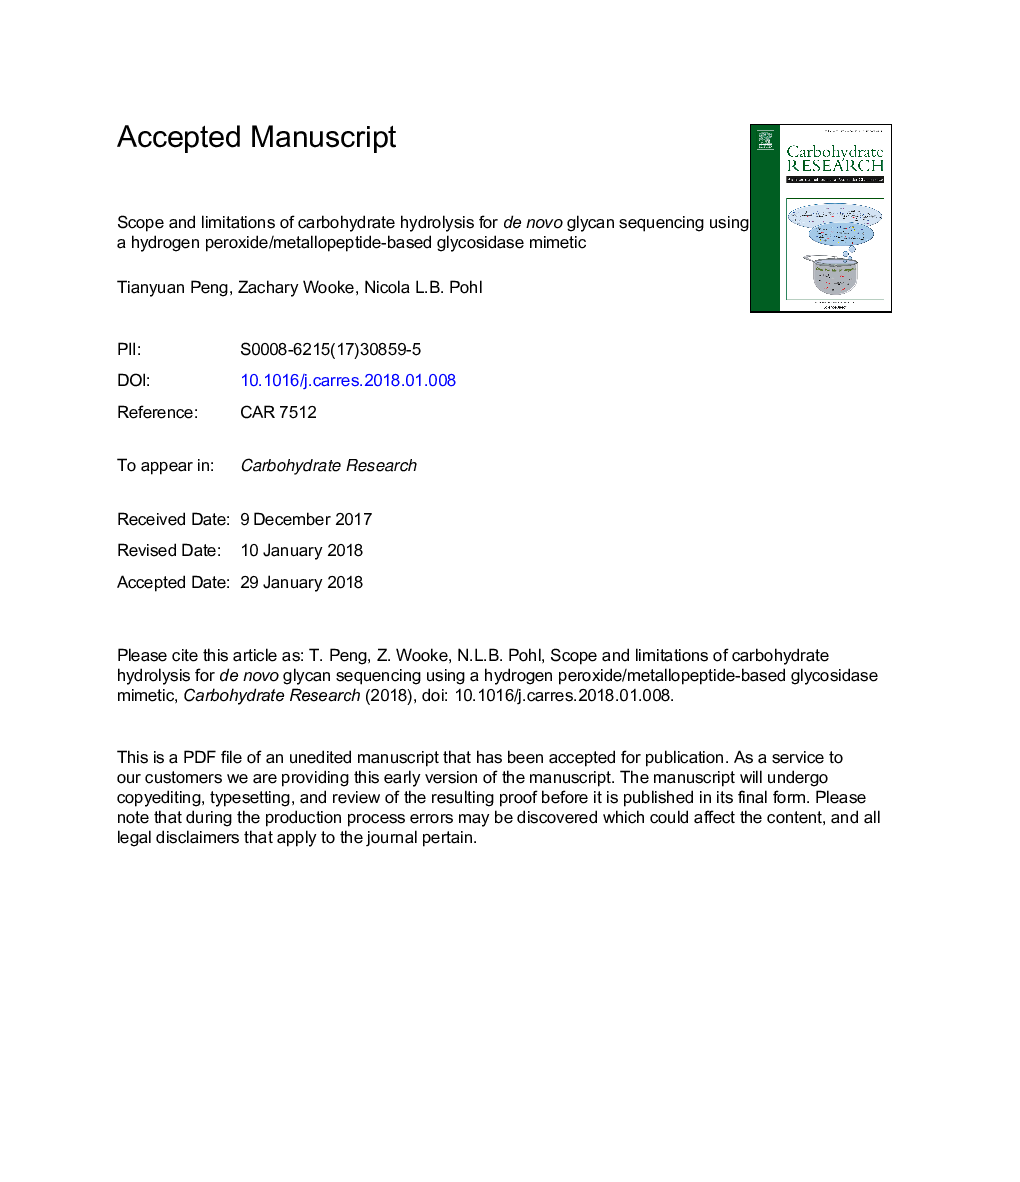 محدوده و محدودیت هیدرولیز کربوهیدرات برای توالی نوین گلیکان با استفاده از پراکسید هیدروژن / متشکل گلیکوزیداز بر پایه متالوپپتید 